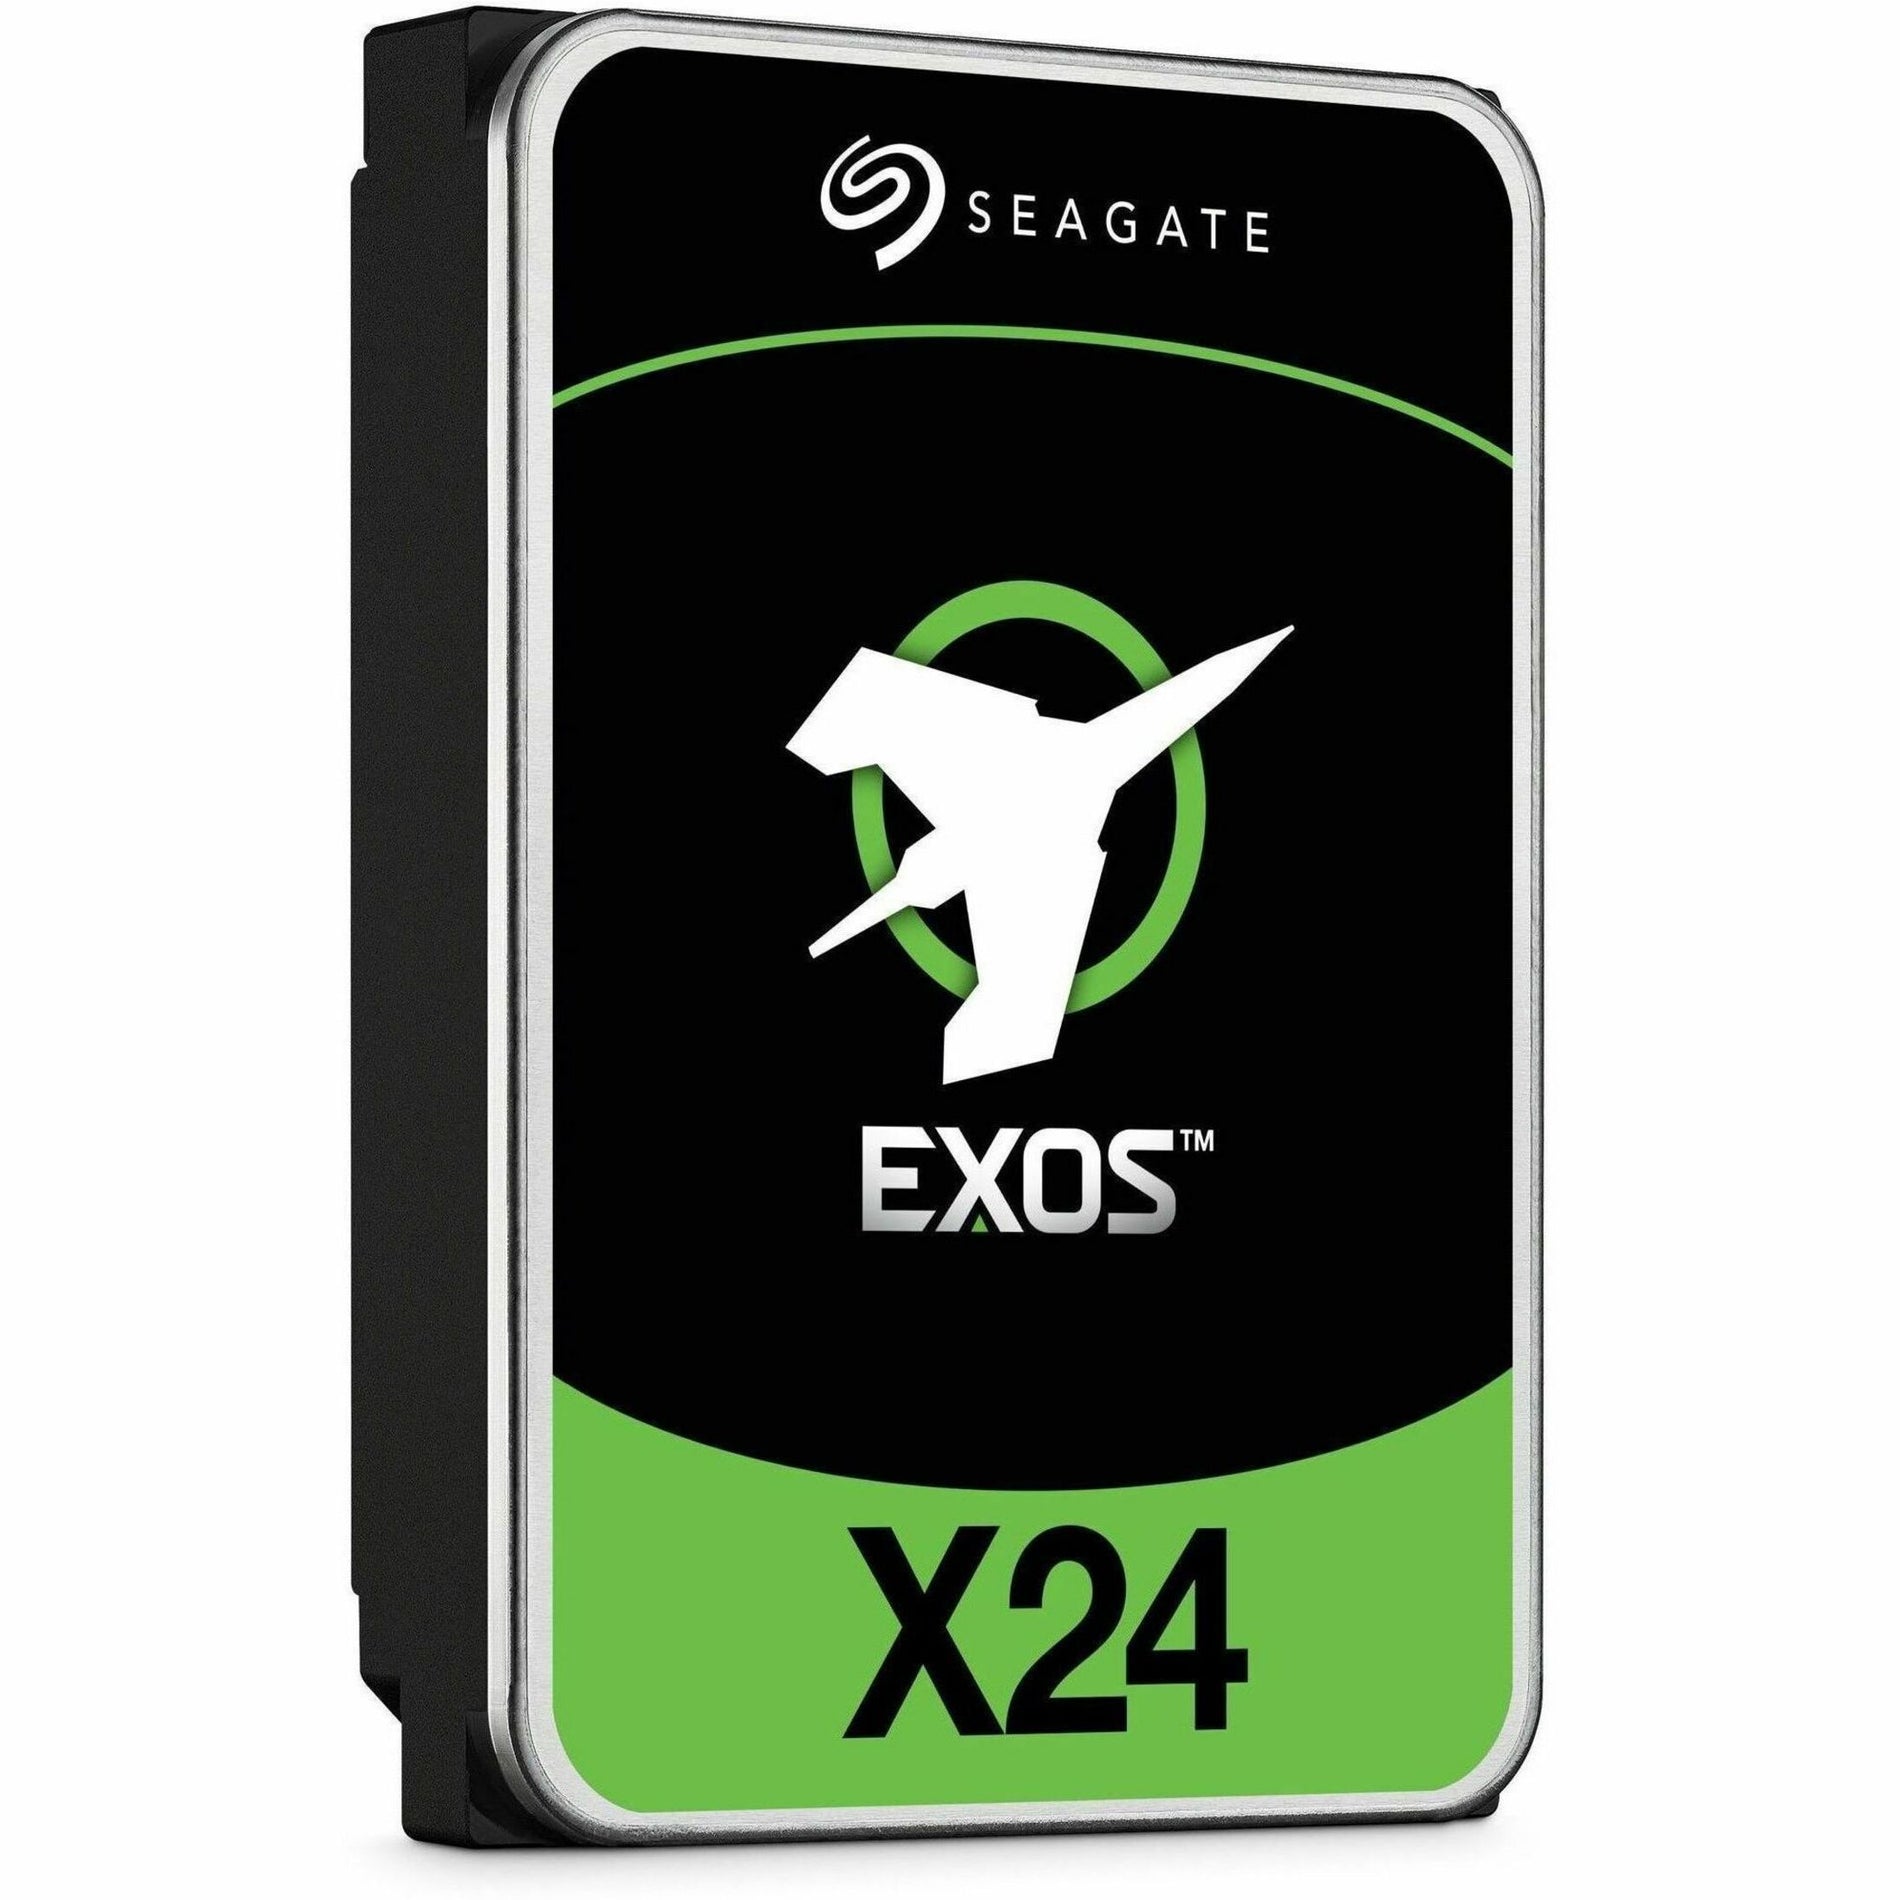 Seagate ST24000NM002H Exos X24 24 TB Hard Drive, 3.5" Internal, SATA/600, 7200 RPM